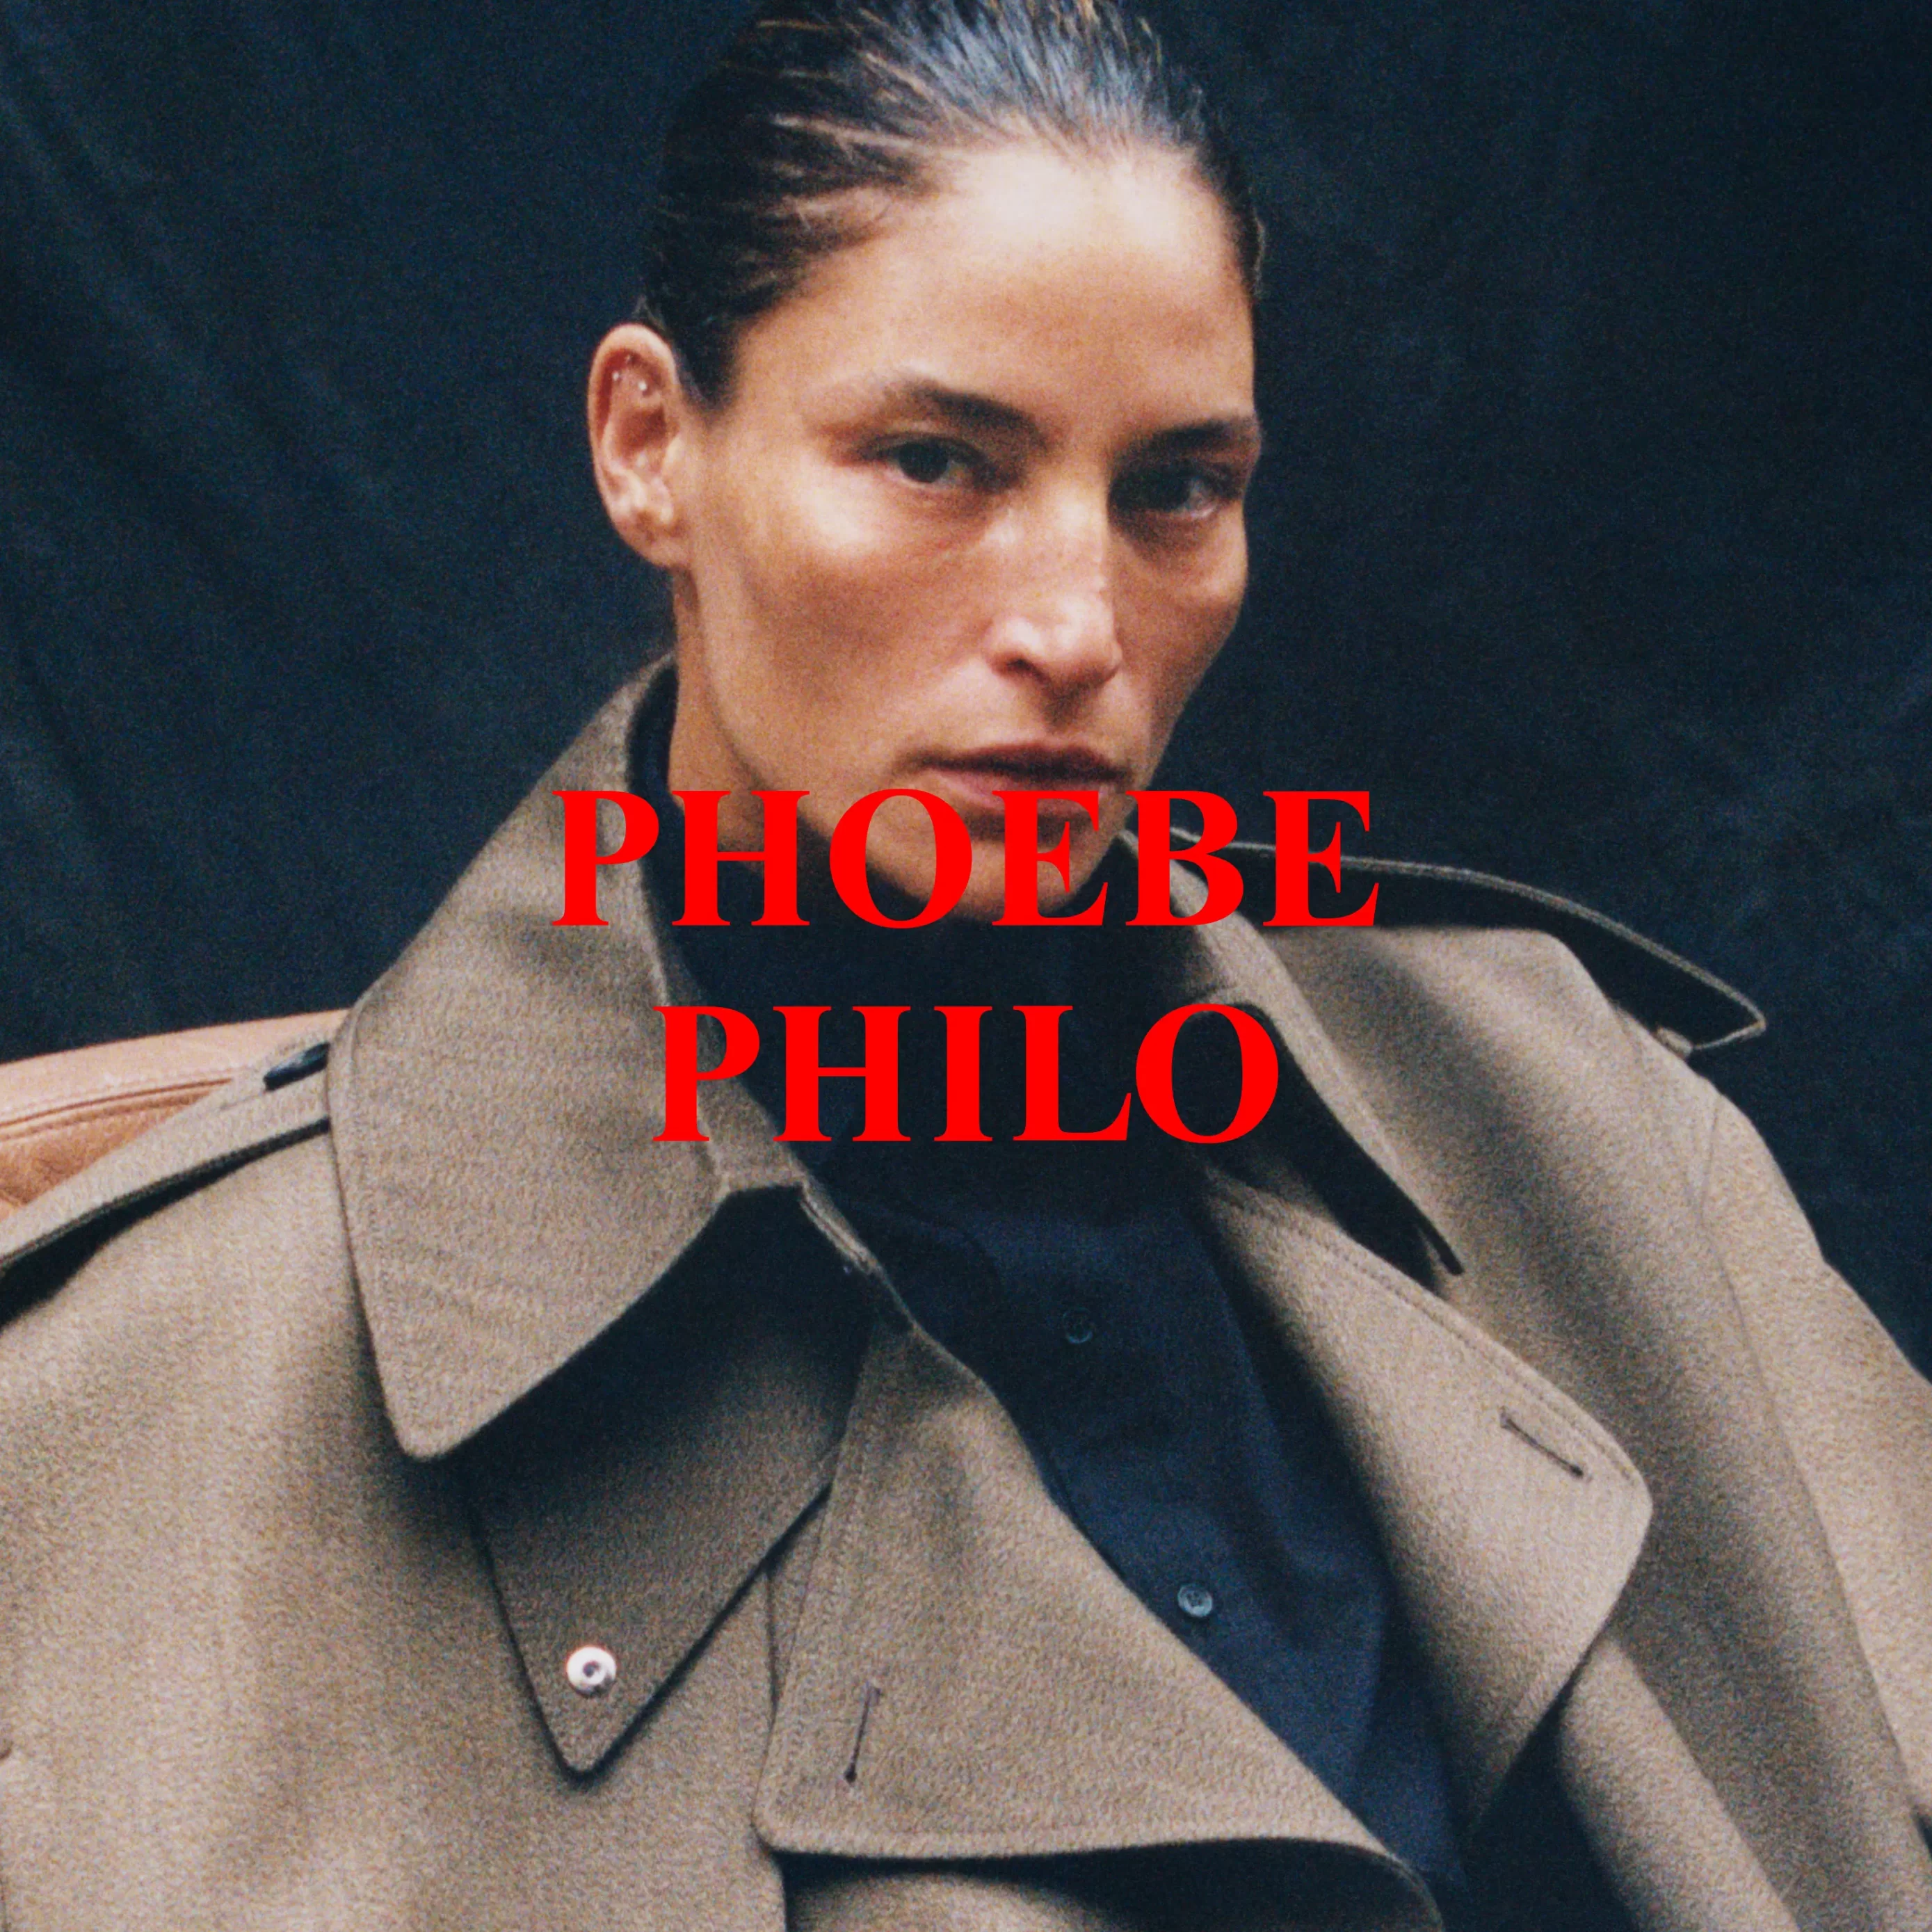 Prva kolekcija znamke Phoebe Philo: Neizrazit, a drzen prvenec angleške oblikovalke